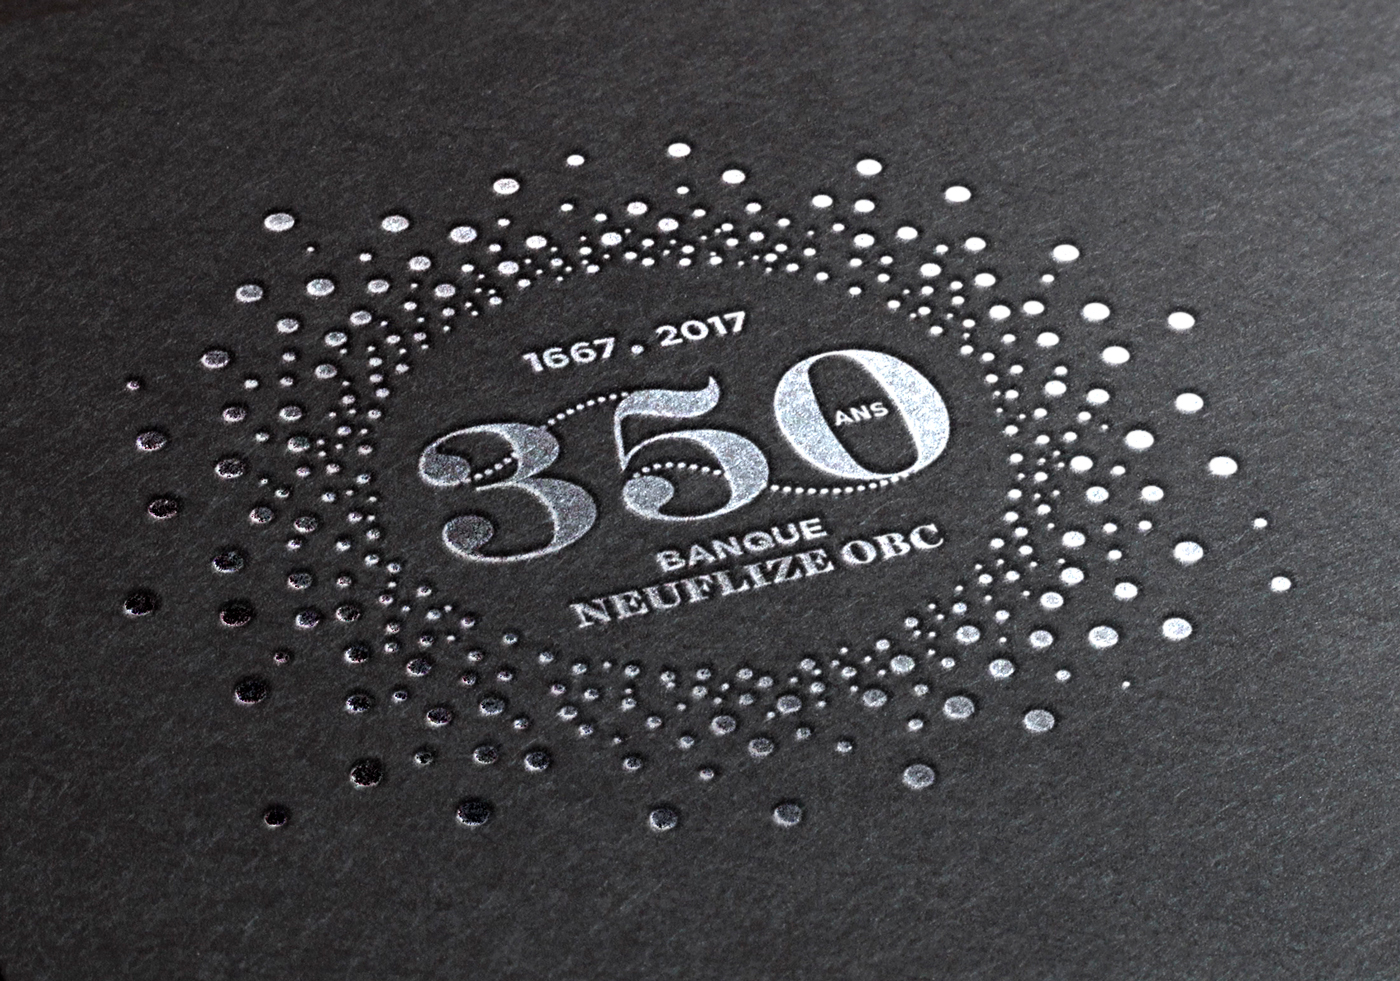 Neuflize OBC 350 ans - Un design pensé par l’agence de design de Paris Partisan du Sens.